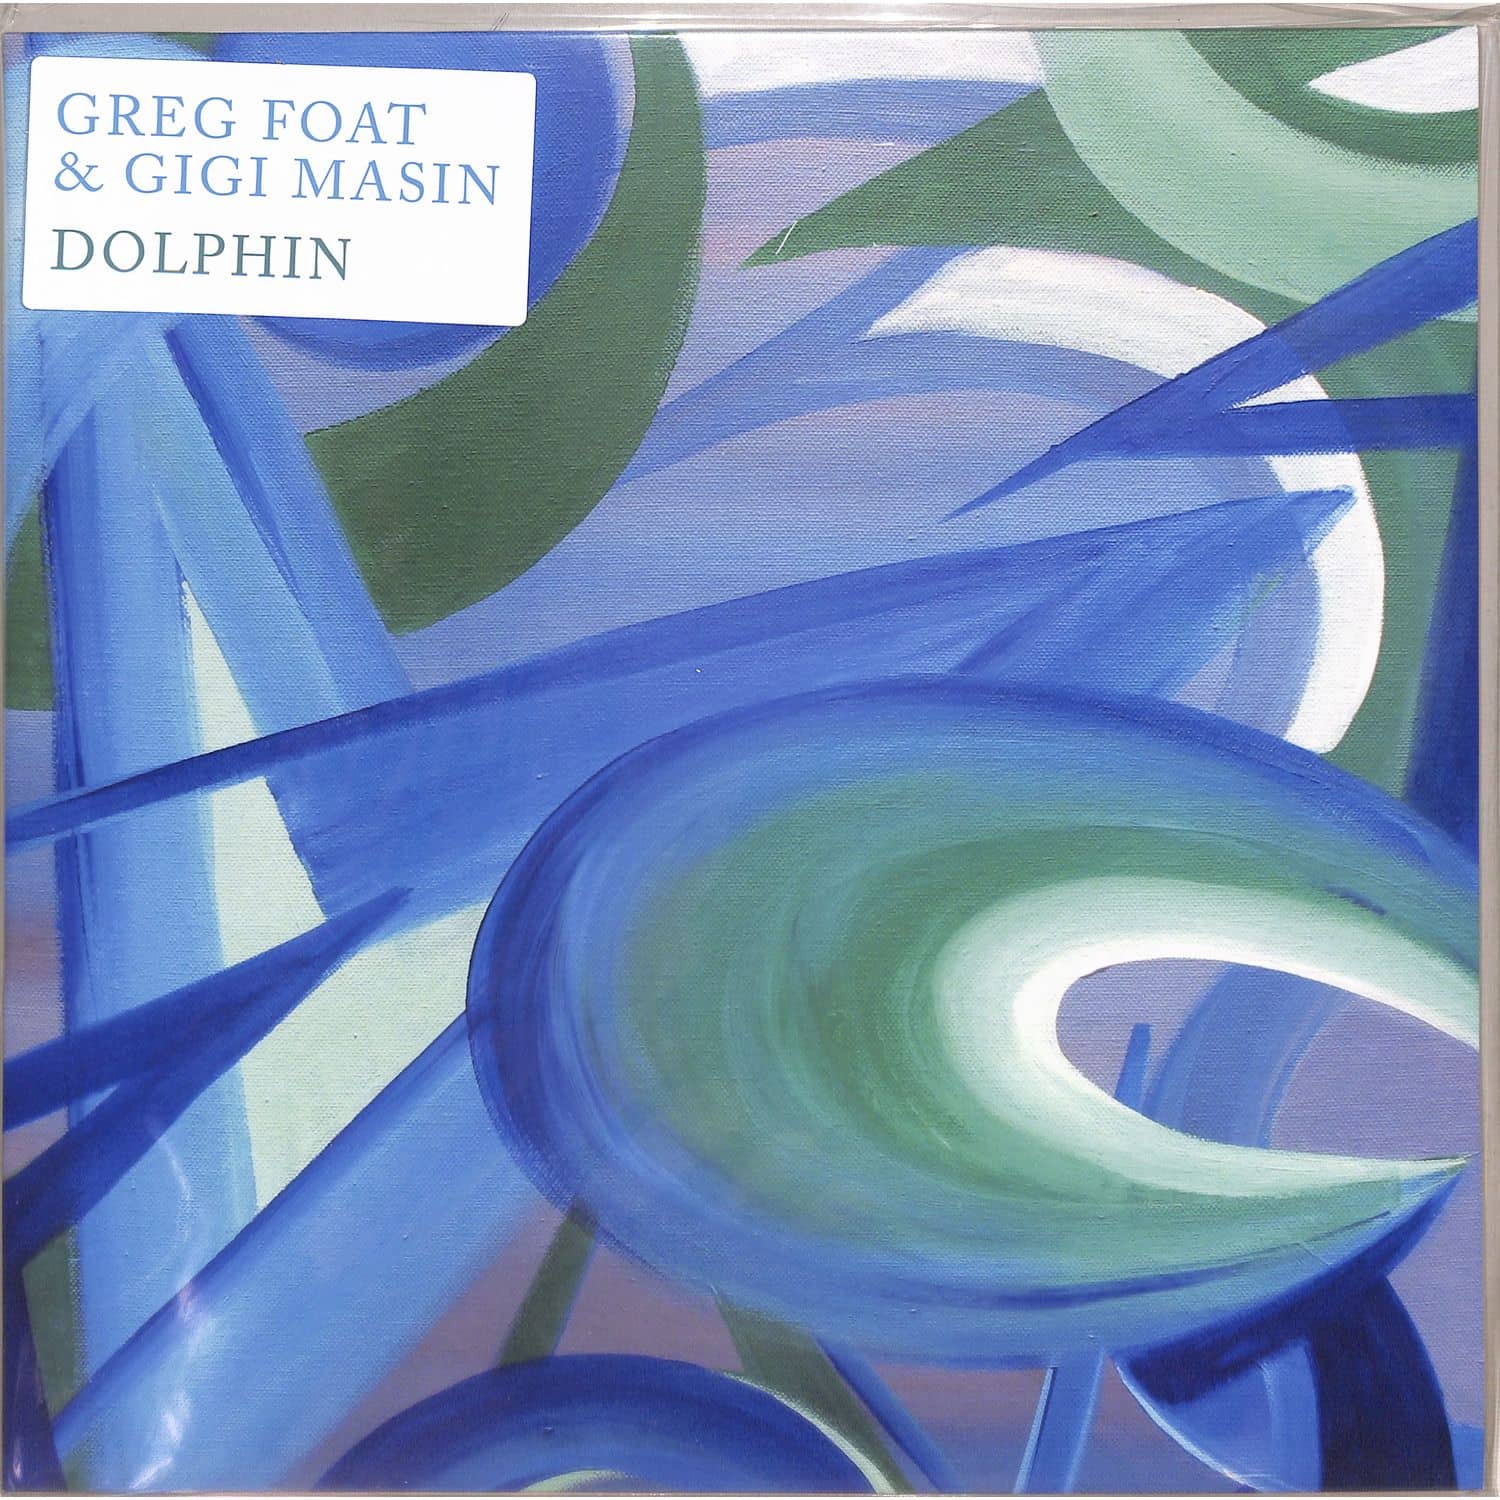 Greg Foat / Gigi Masin - DOLPHIN 